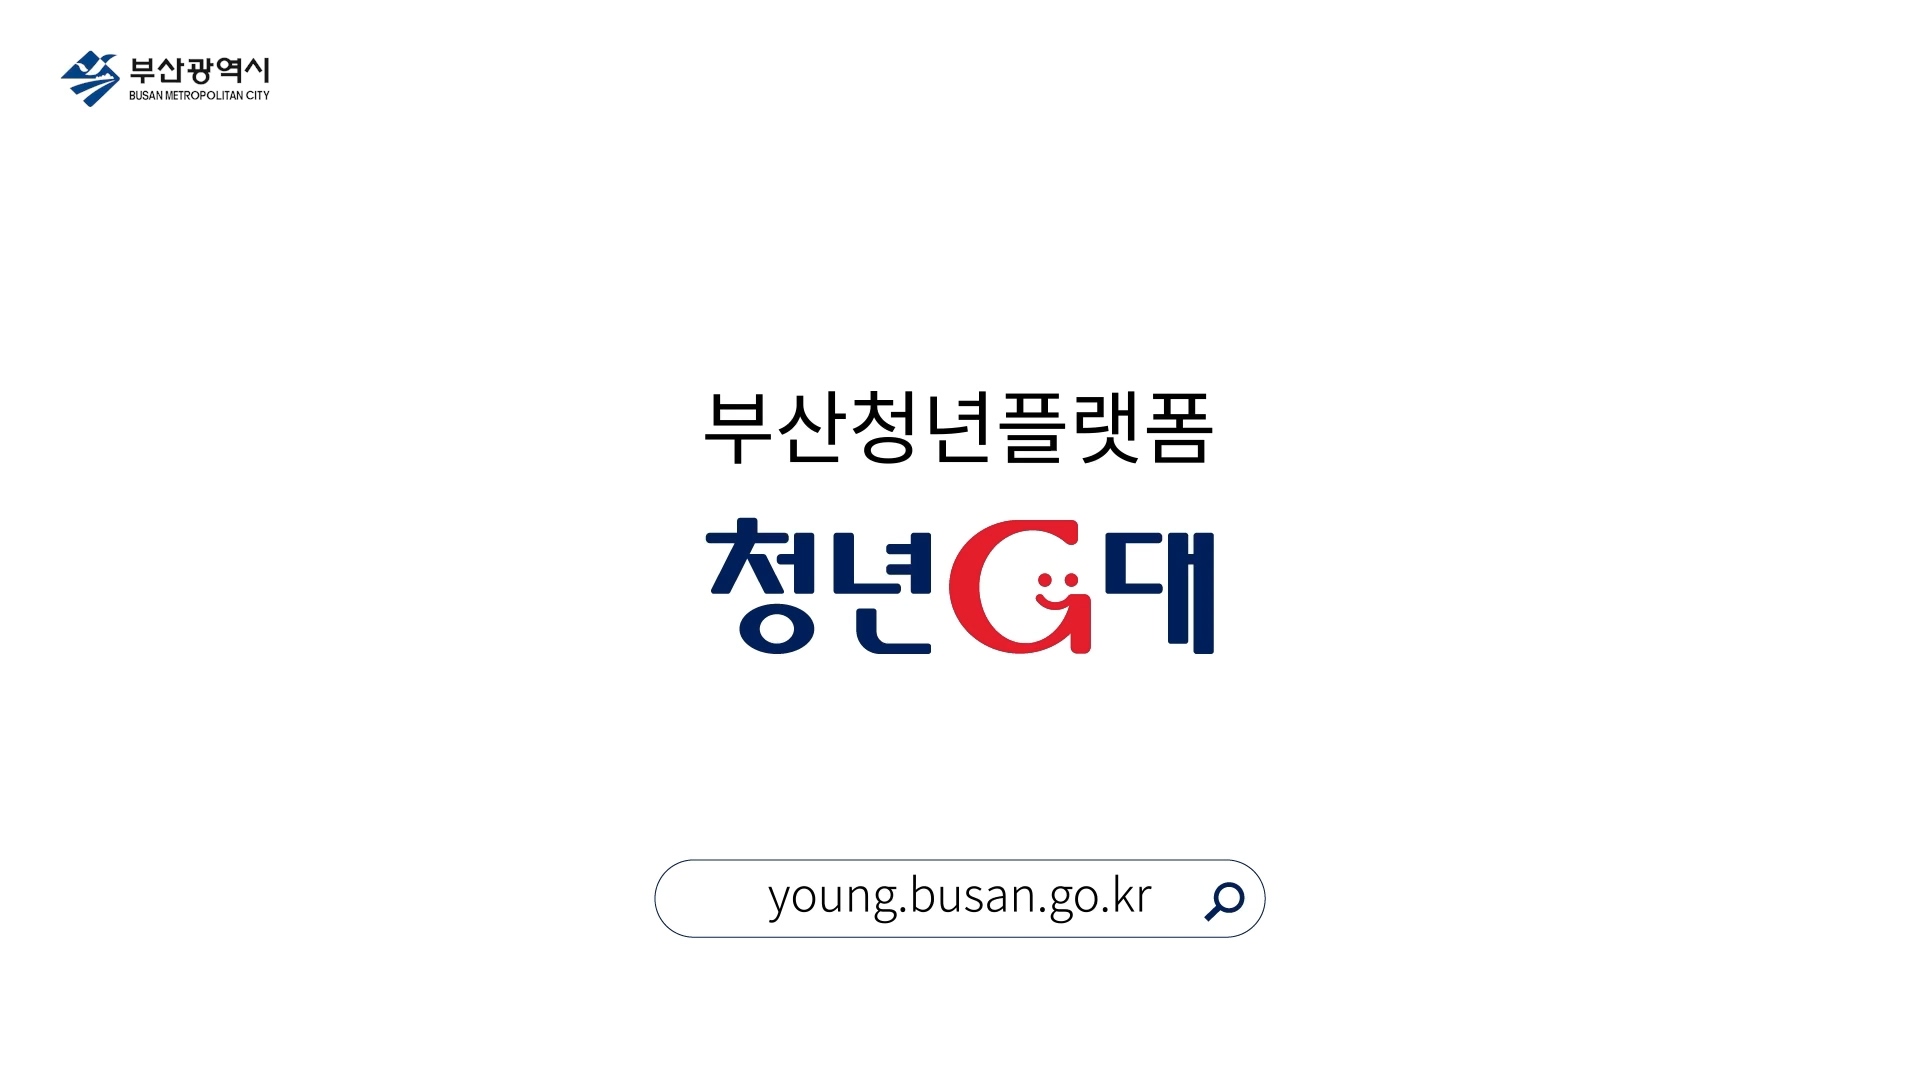 부산광역시 BUSAN METROPOLITAN CITY 부산청년플랫폼 청년G대 
young.busan.go.kr 